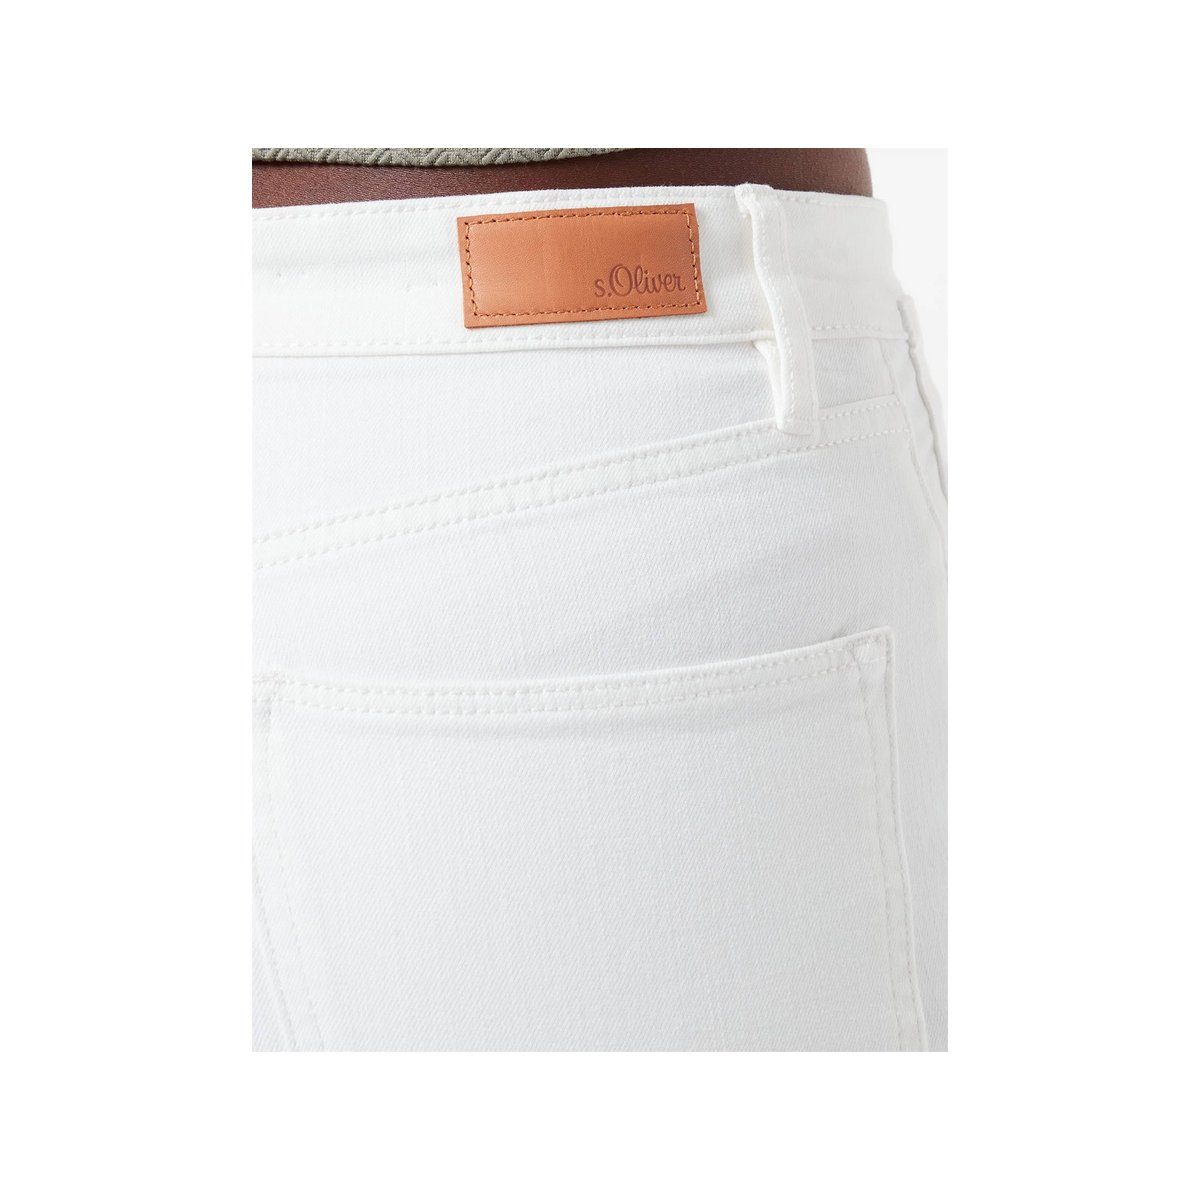 (1-tlg) 5-Pocket-Jeans s.Oliver uni